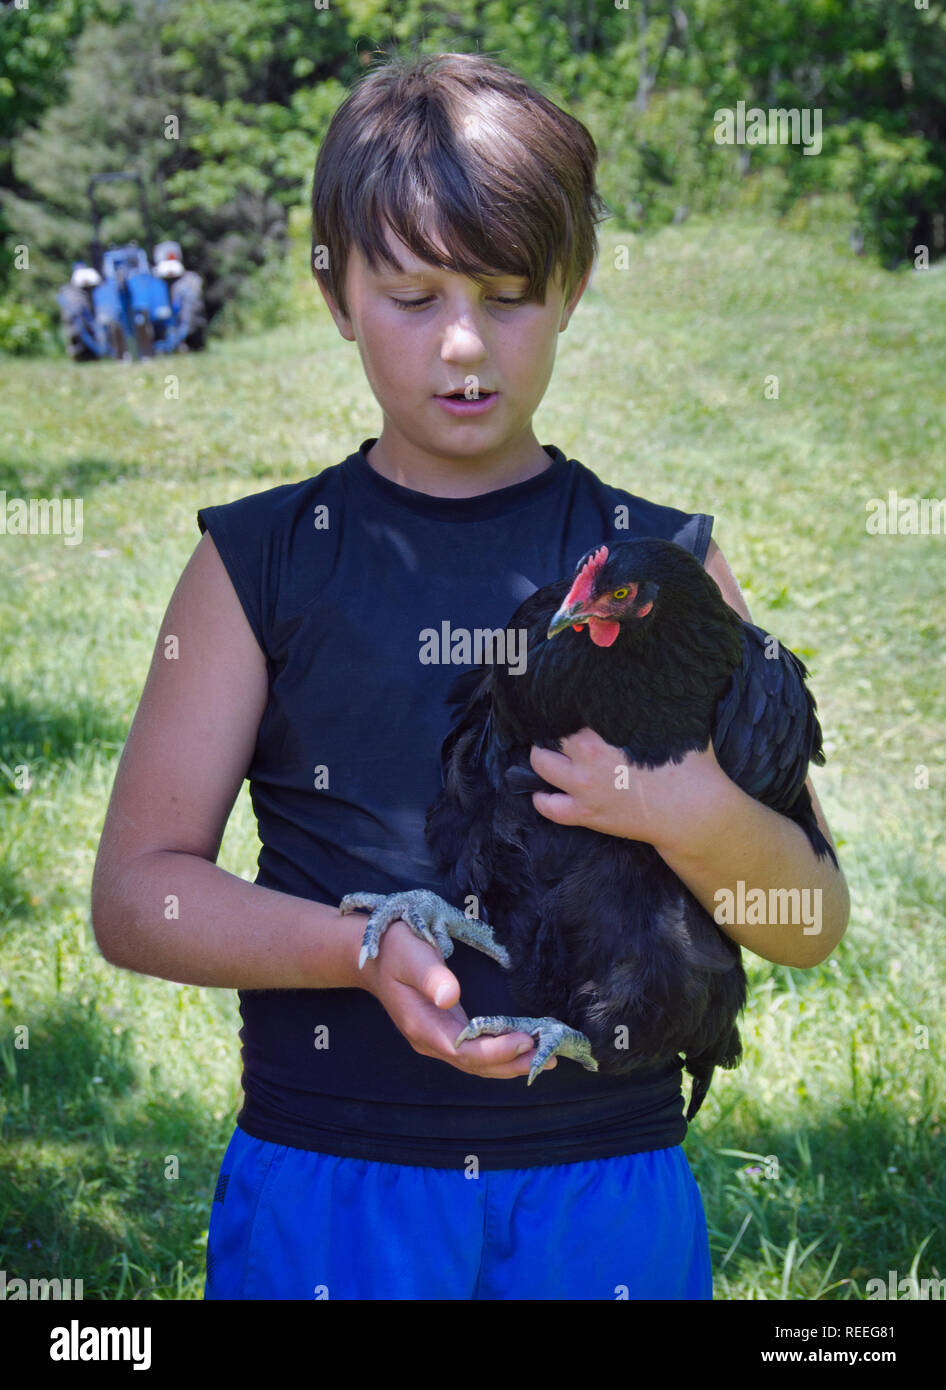 Ein kleiner Junge hält seine pet-hahn Huhn Stockfoto